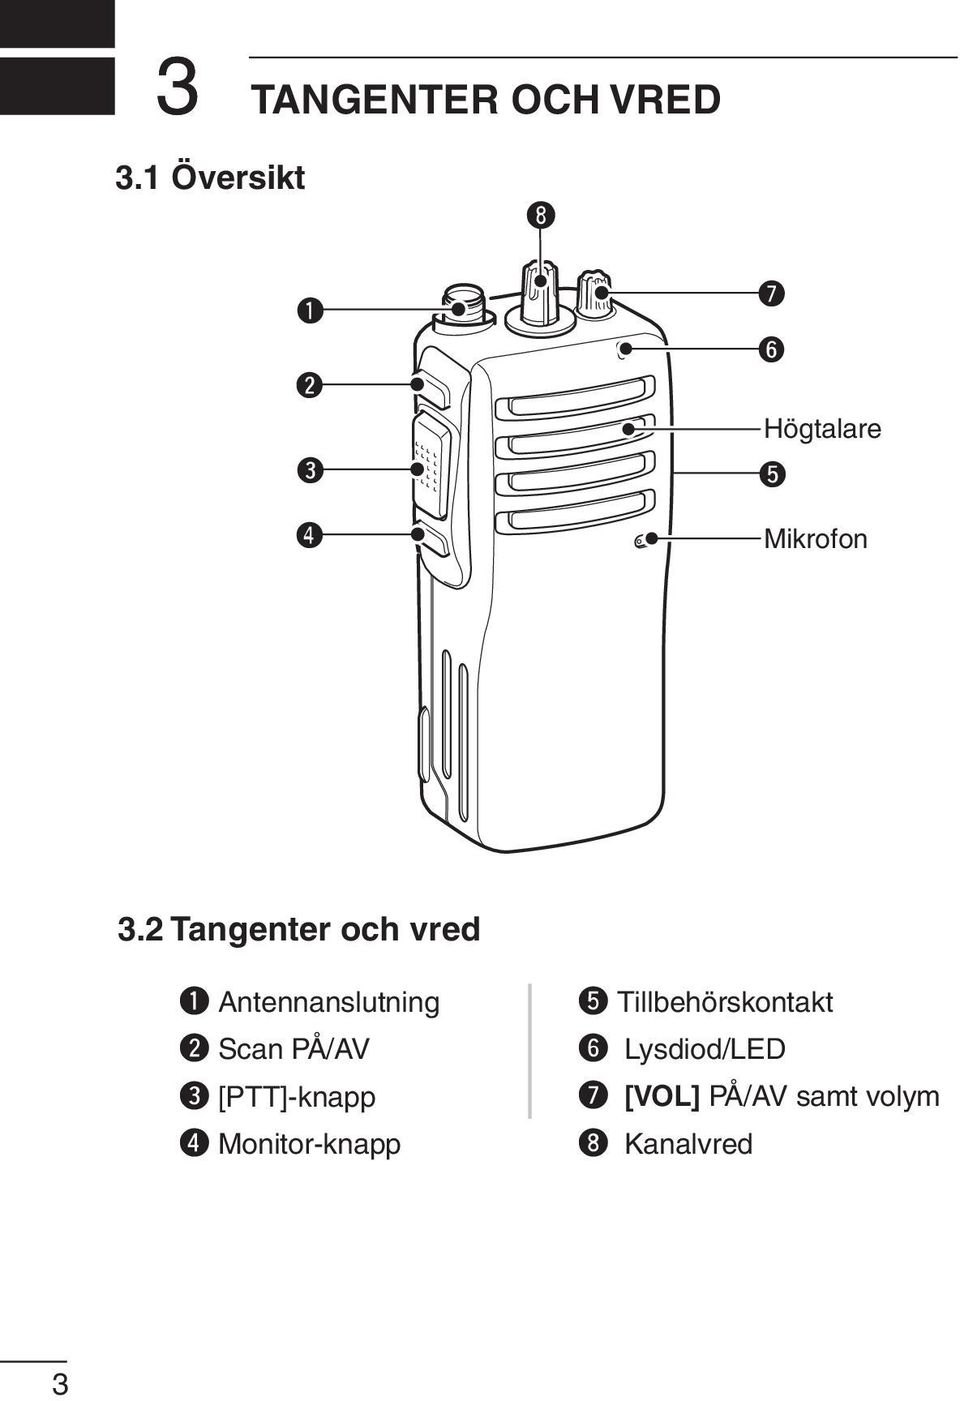 2 Tangenter och vred q Antennanslutning w Scan PÅ/AV e